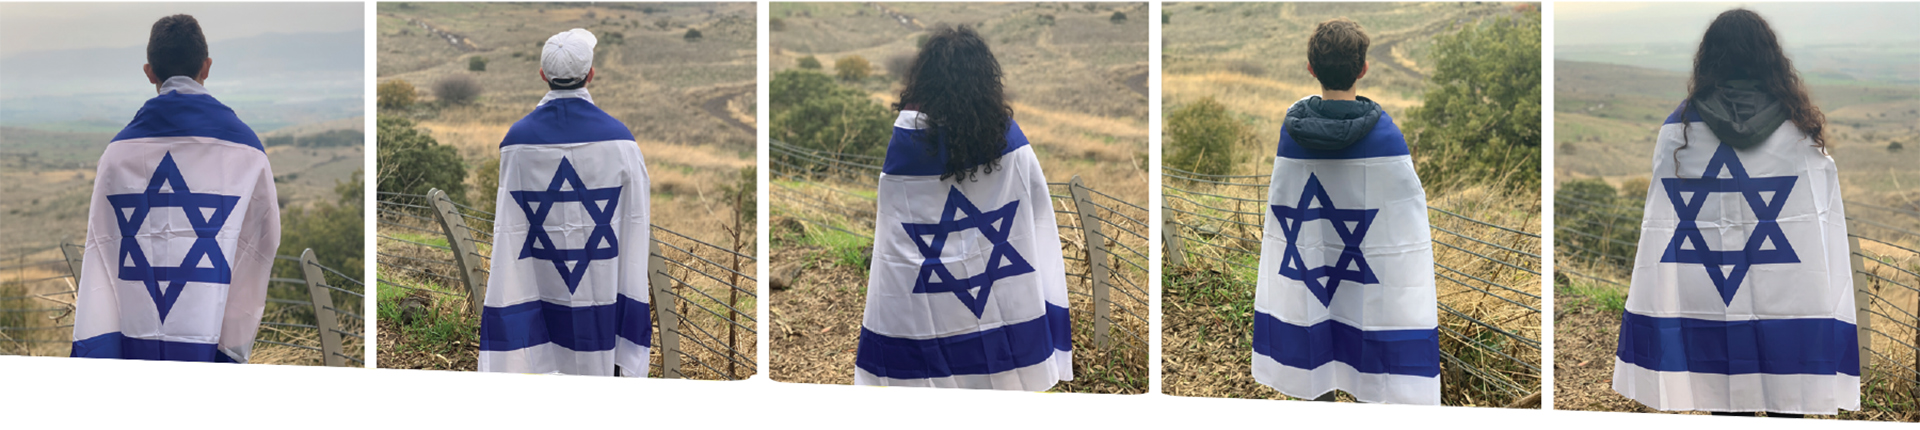 people wearing israeli flags